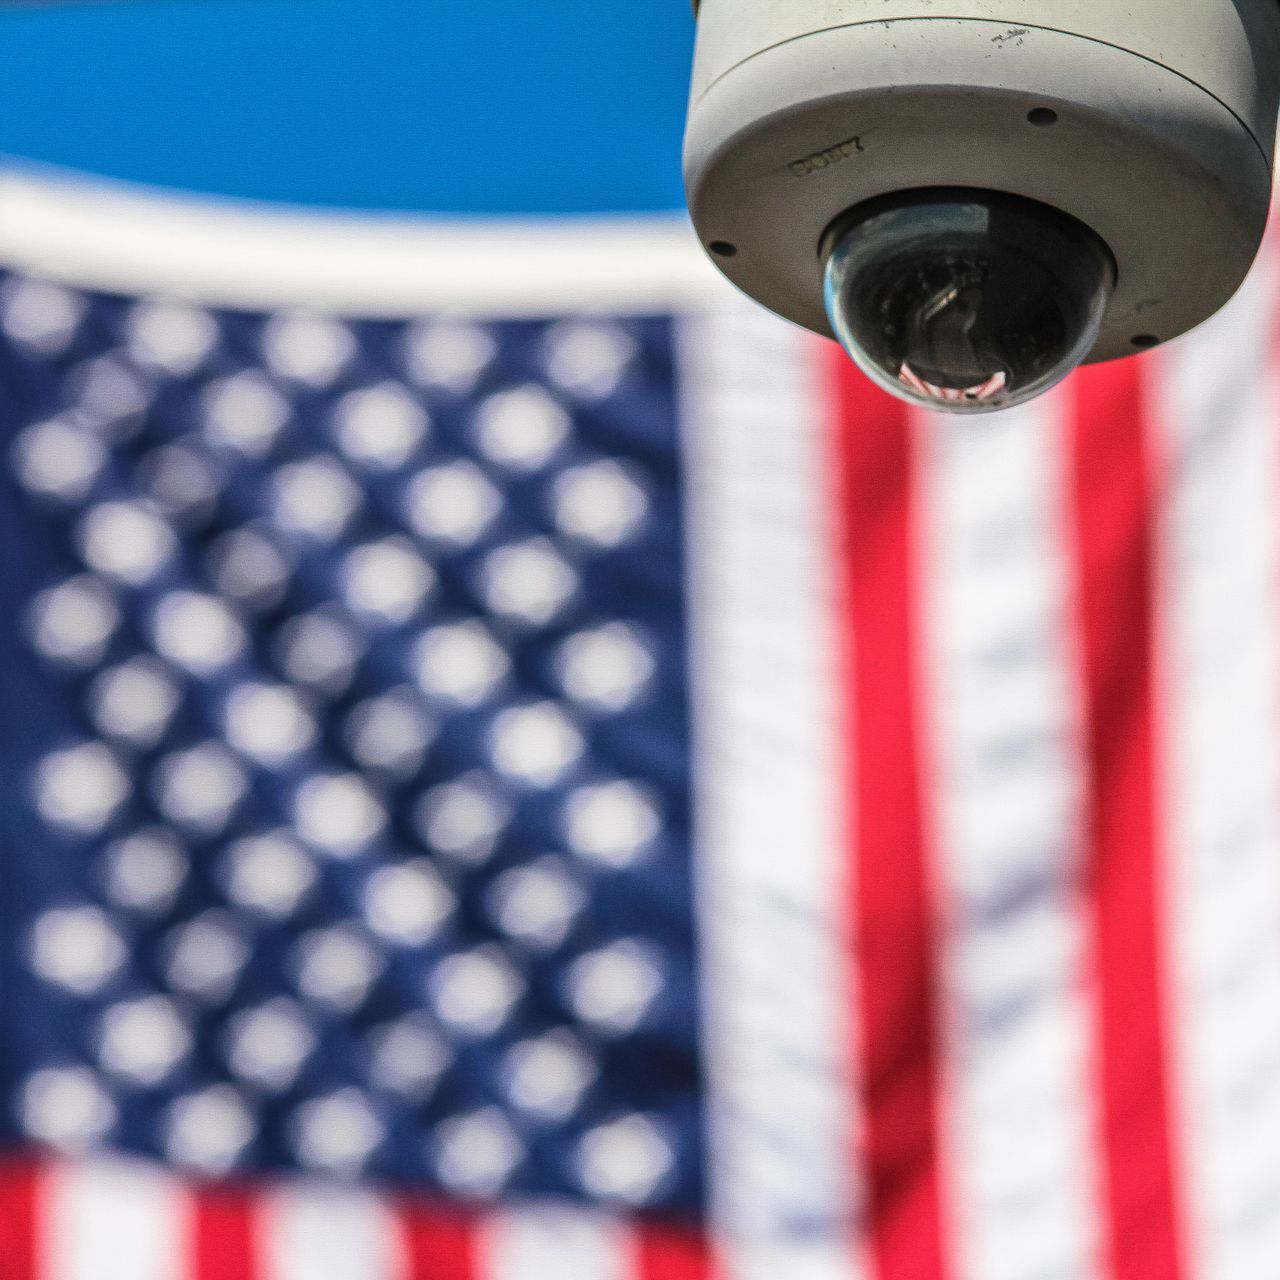 La bandiera a stelle e strisce degli Stati Uniti d'America sullo sfondo di una telecamera di videosorveglianza (Foto: Francesco Ungaro/Pexels)